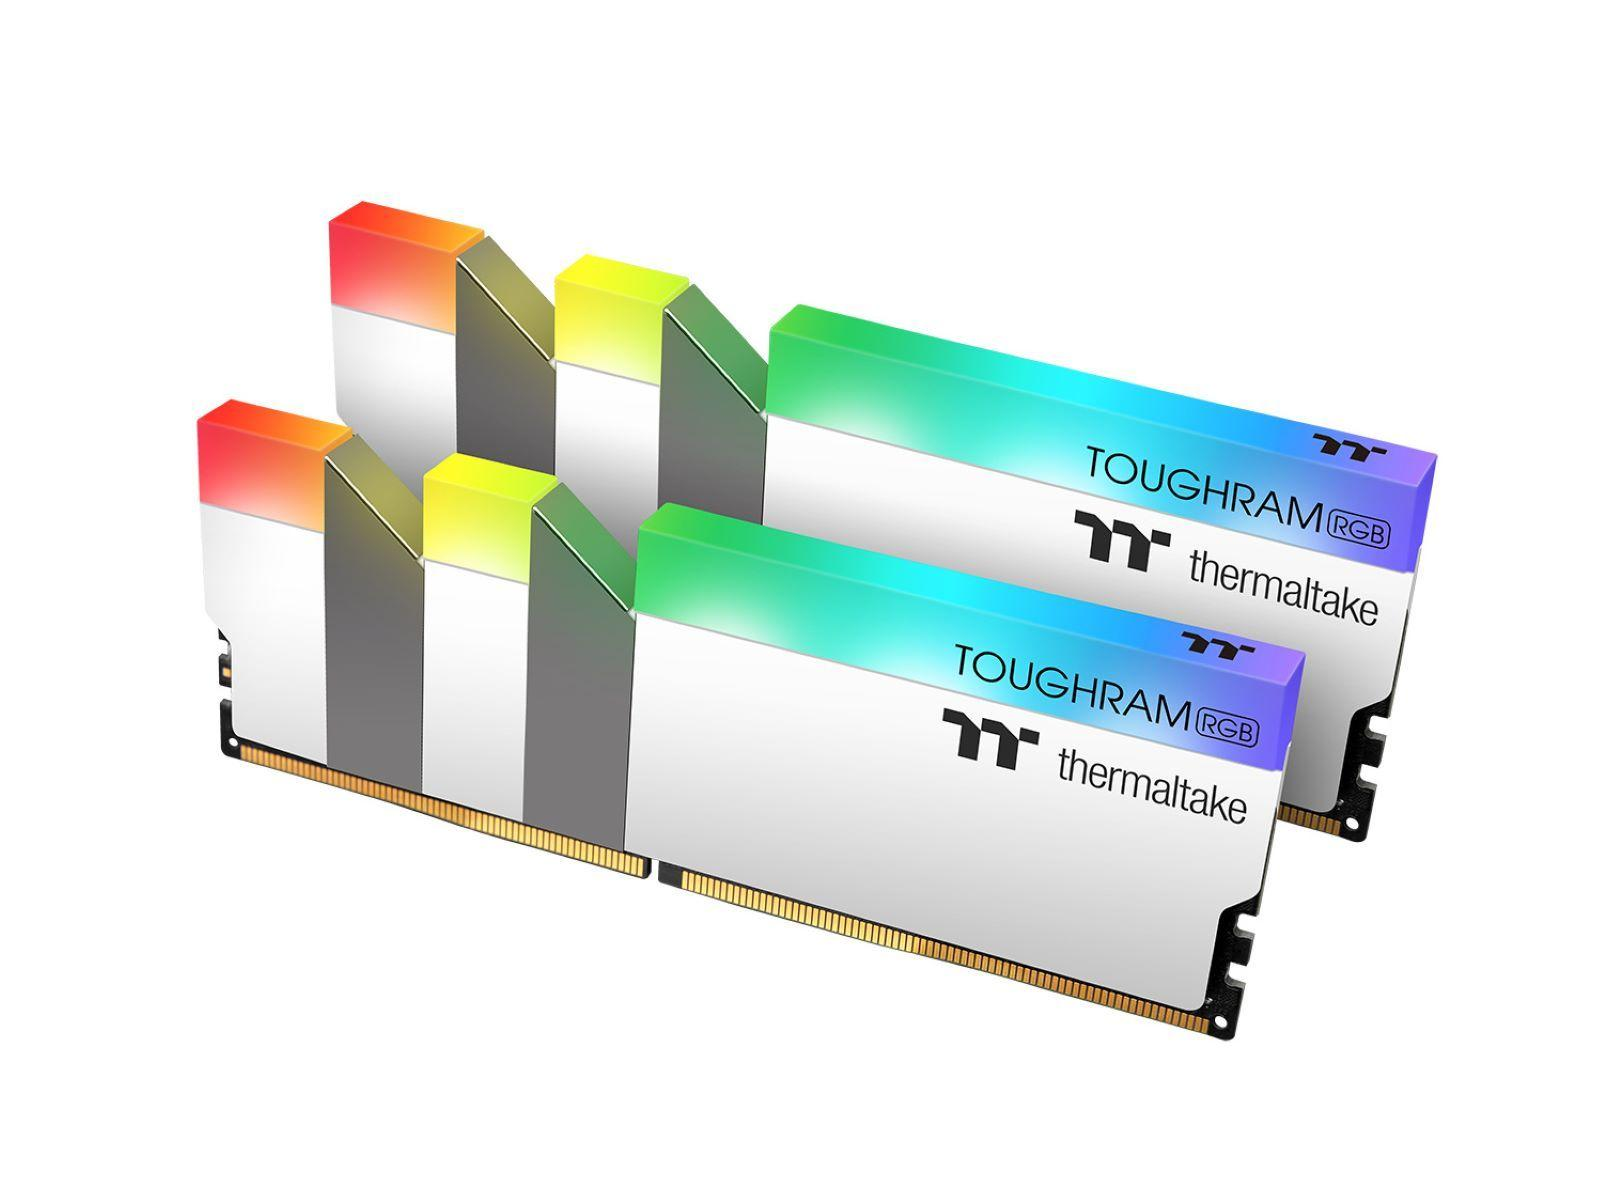 THERMALTAKE TOUGHRAM RGB WHITE GB 16 DDR4 Arbeitsspeicher